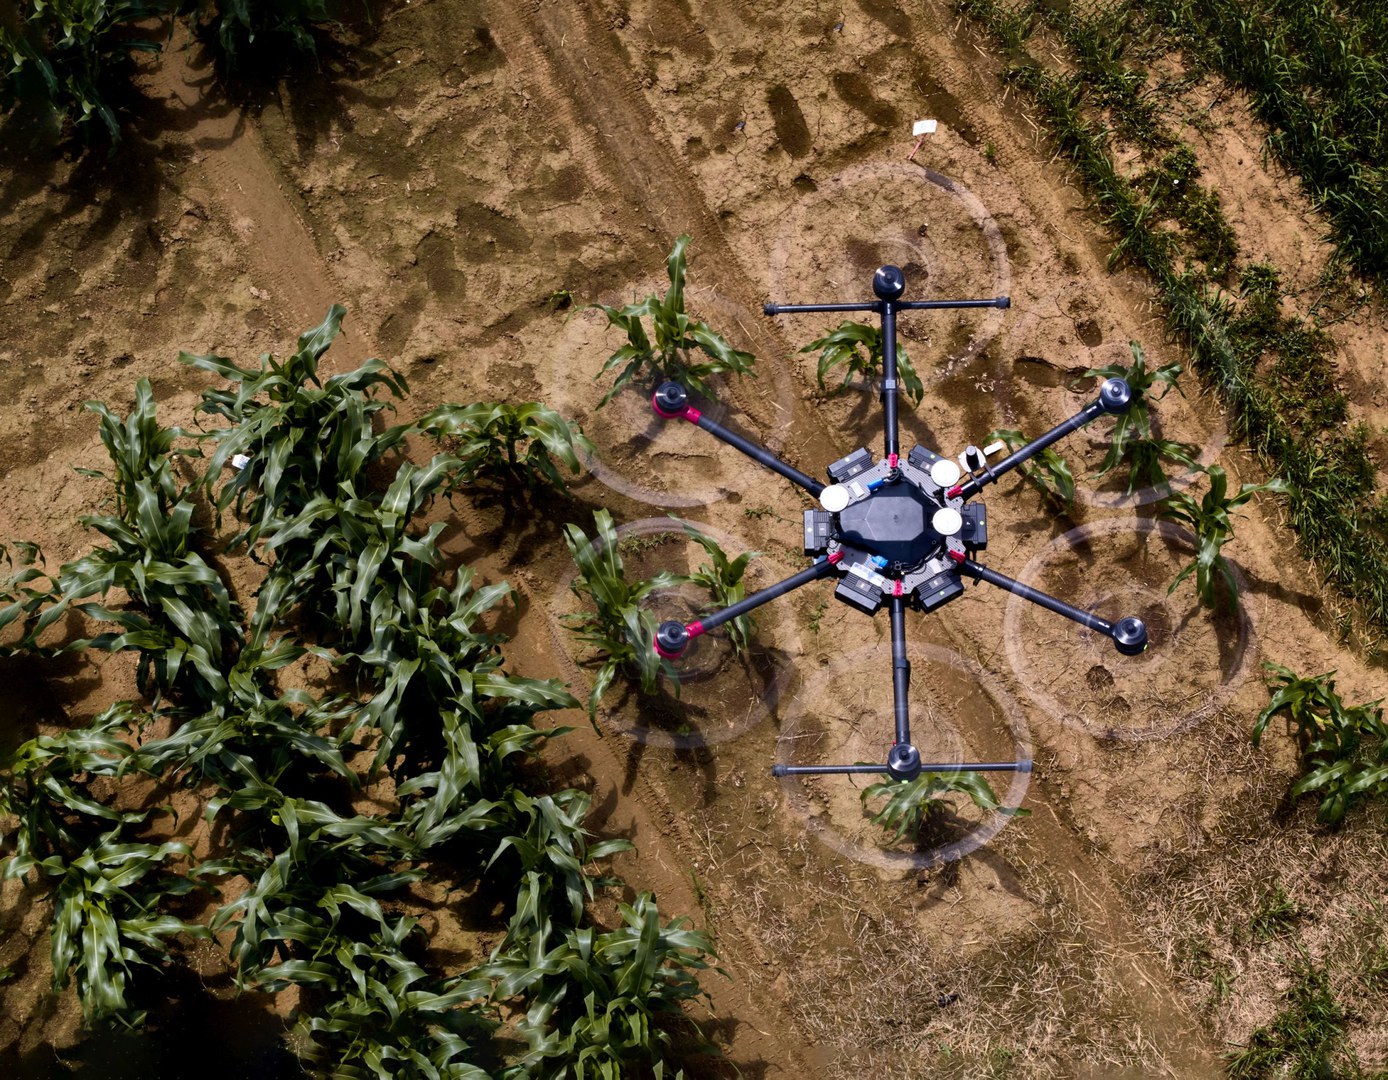 Am Exzellenzcluster PhenoRob der Universität Bonn forschen die Wissenschaftlerinnen und Wissenschaftler unter anderem an Drohnen für die Landwirtschaft.